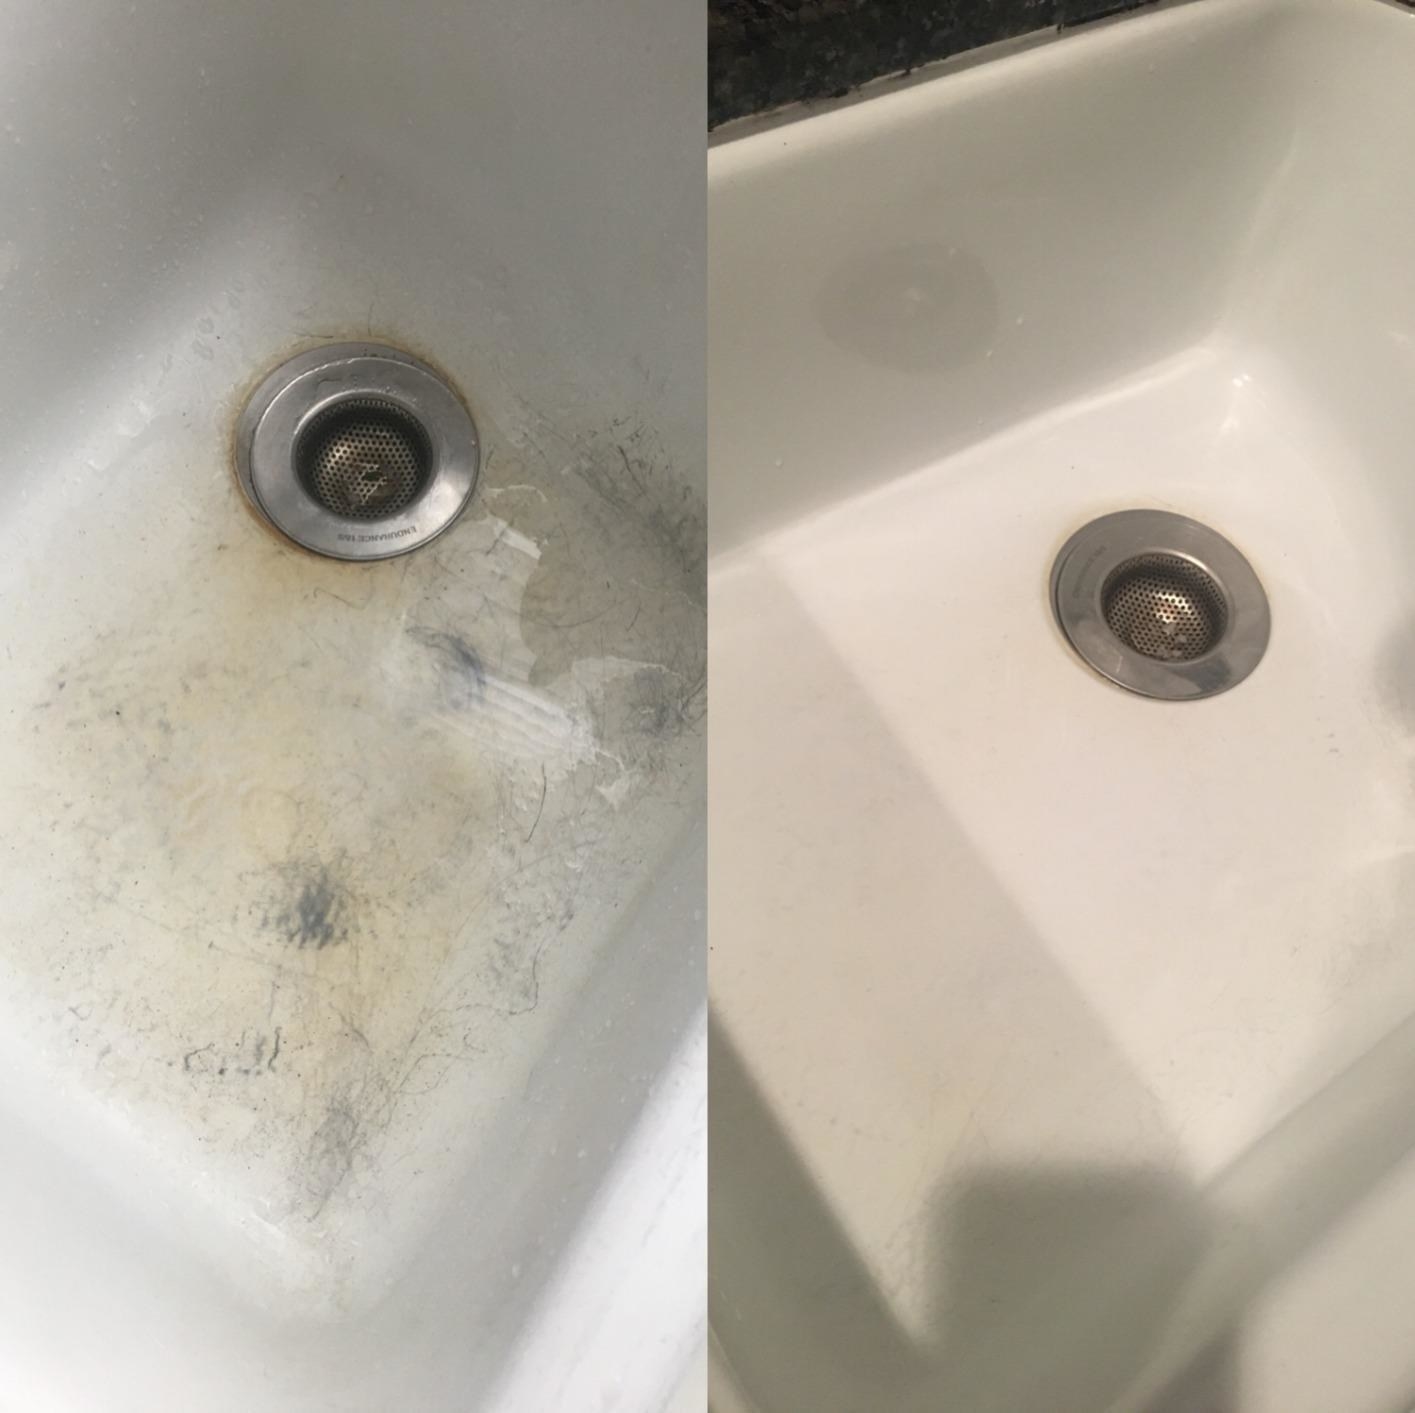 检查图像标记的瓷水槽清洗之前,和之后的水槽清洗后看到一尘不染的相同”class=